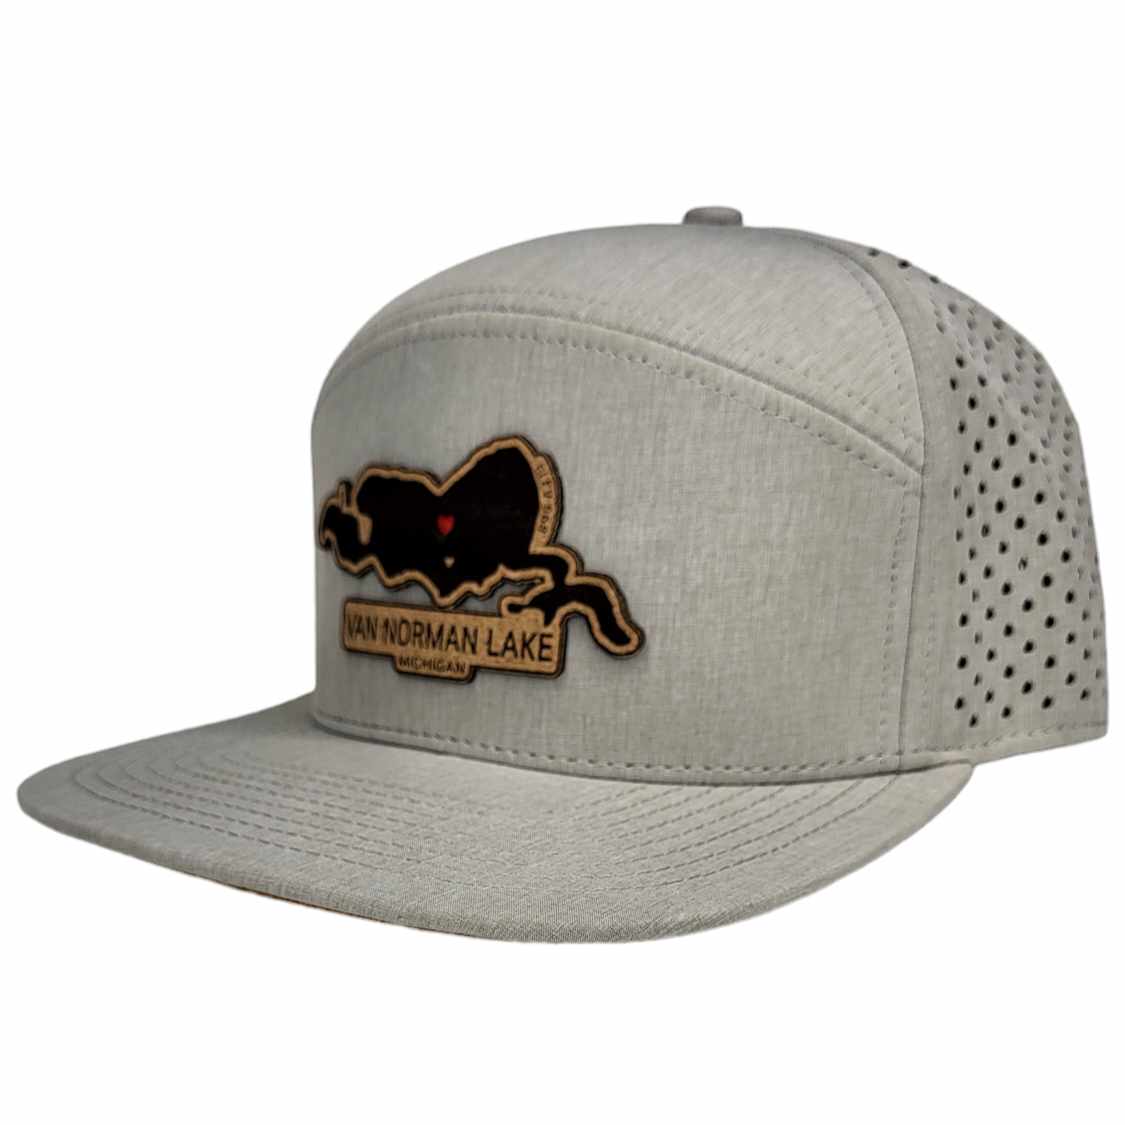 Van Norman Lake Michigan Hat